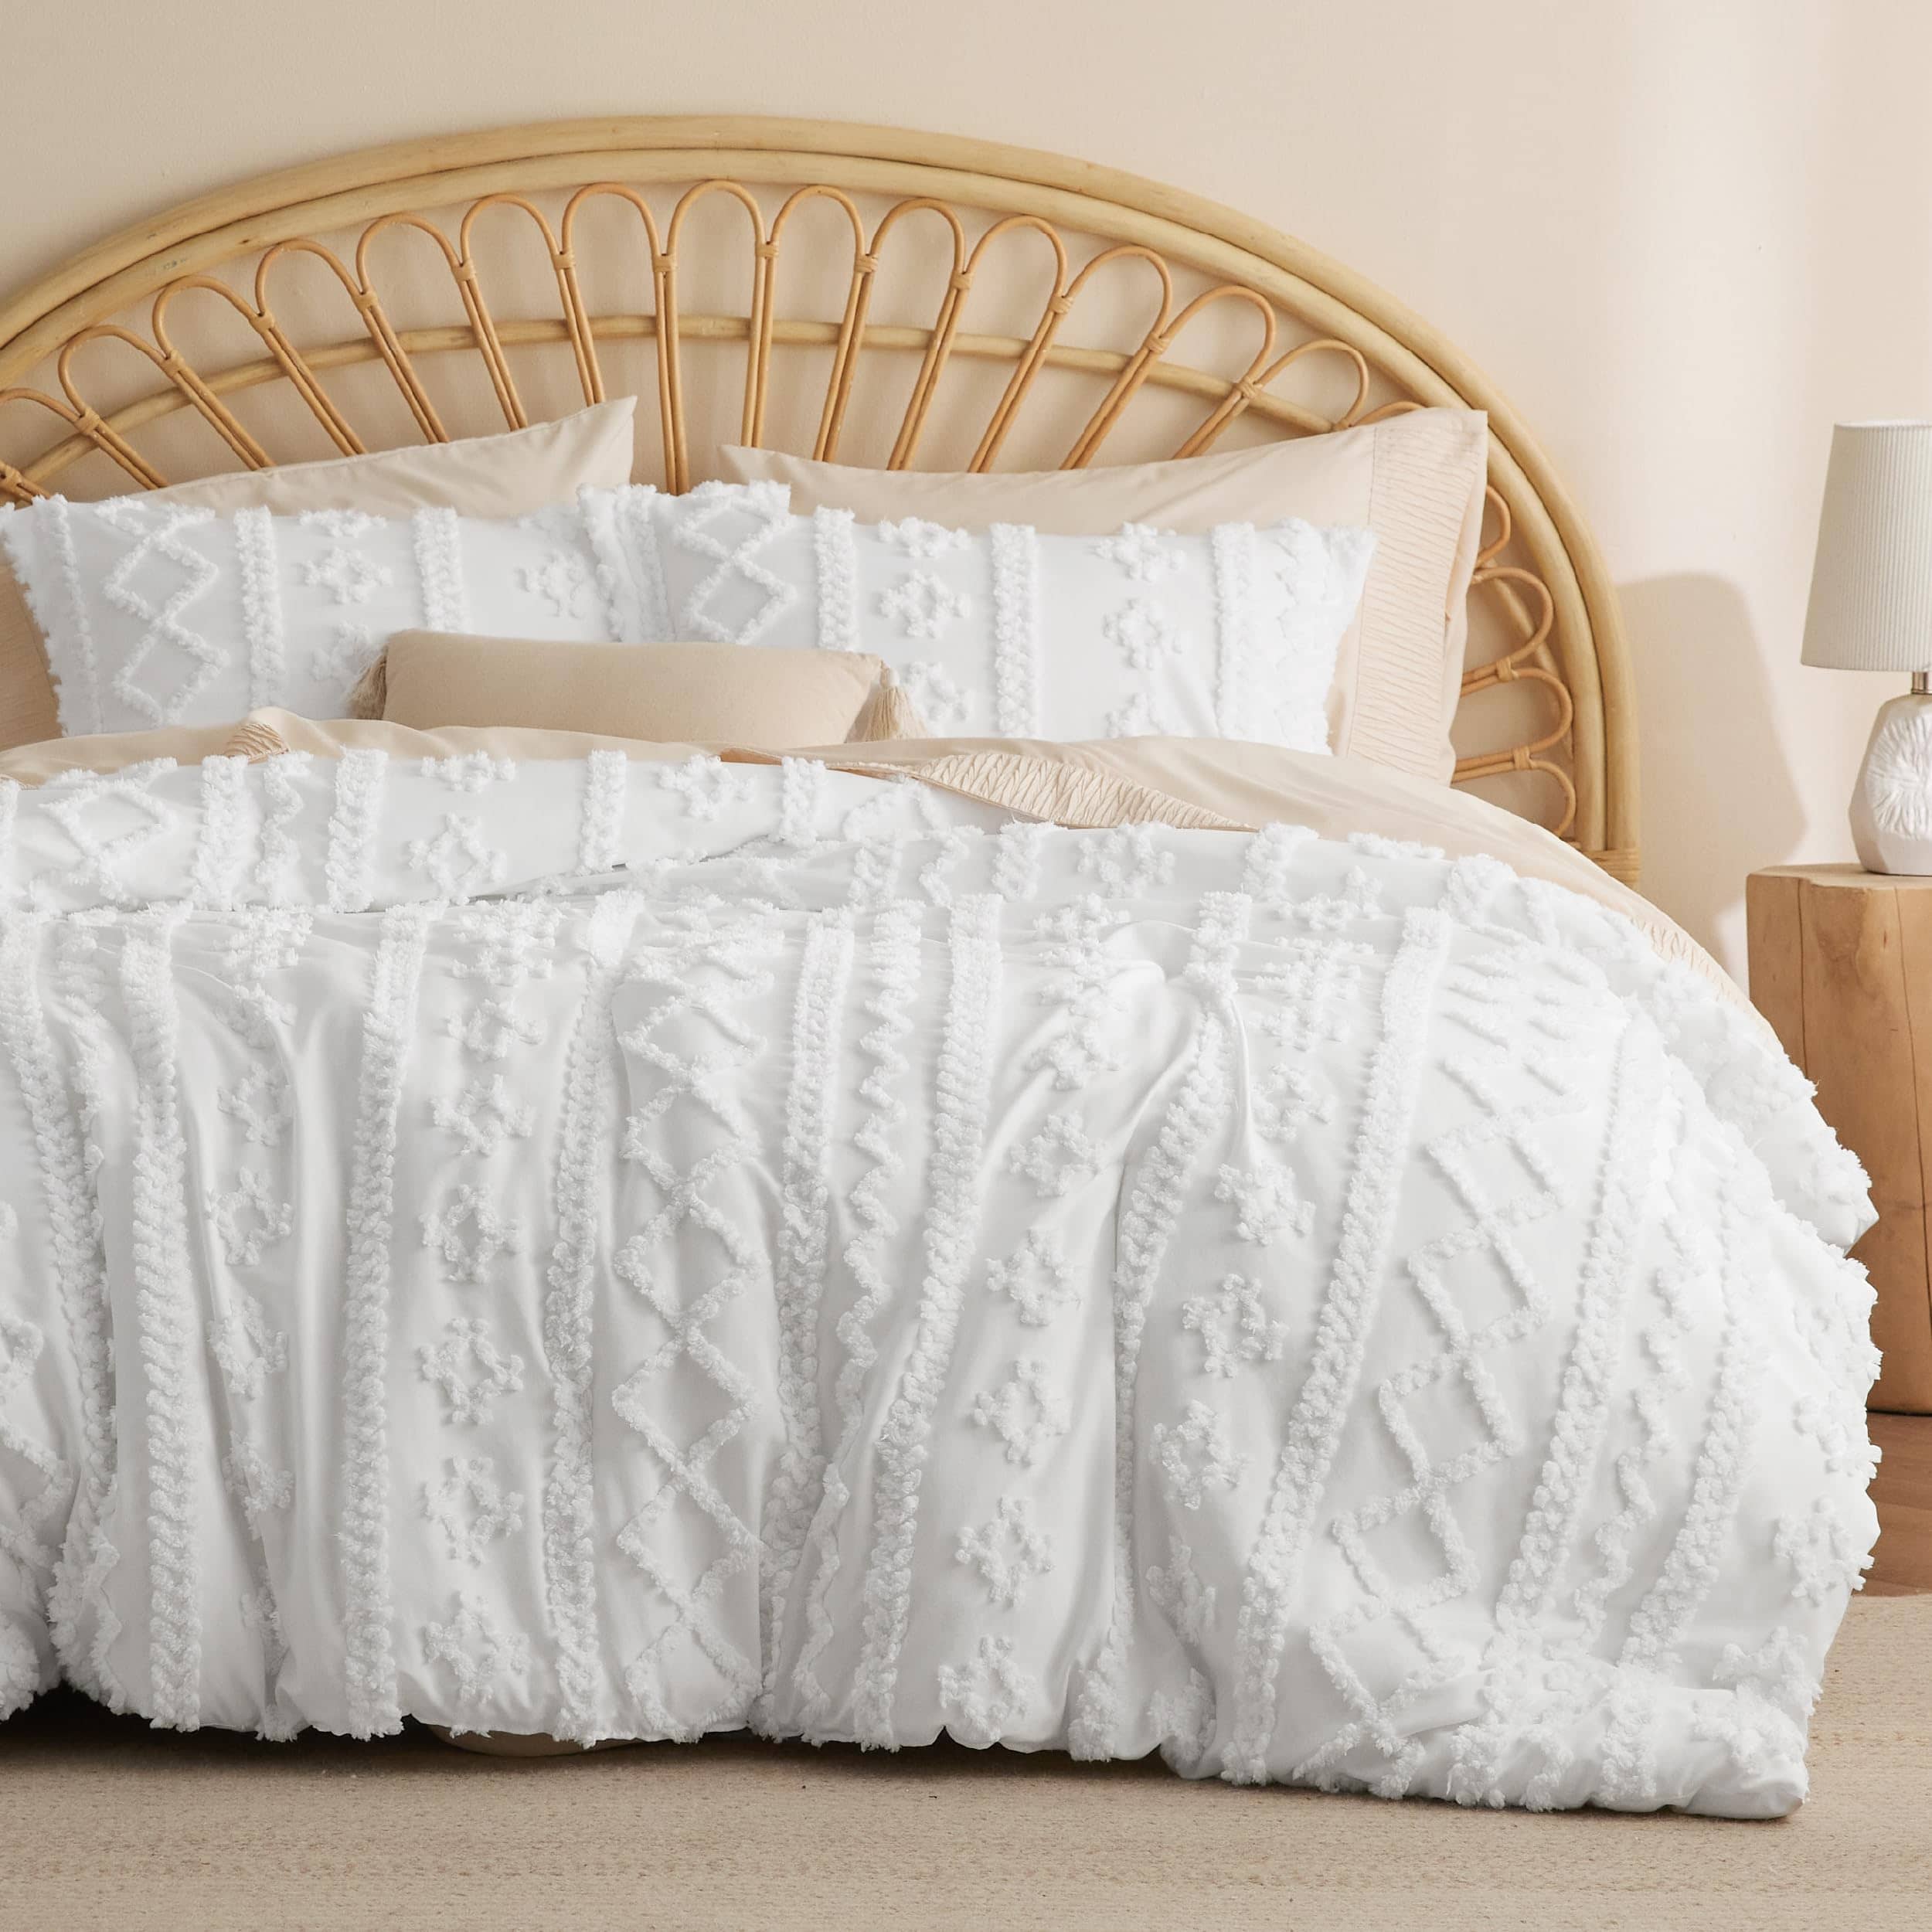 Bedsure Dorm Bedding Twin Comforter Set - 5 Pieces Pintuck Bed in